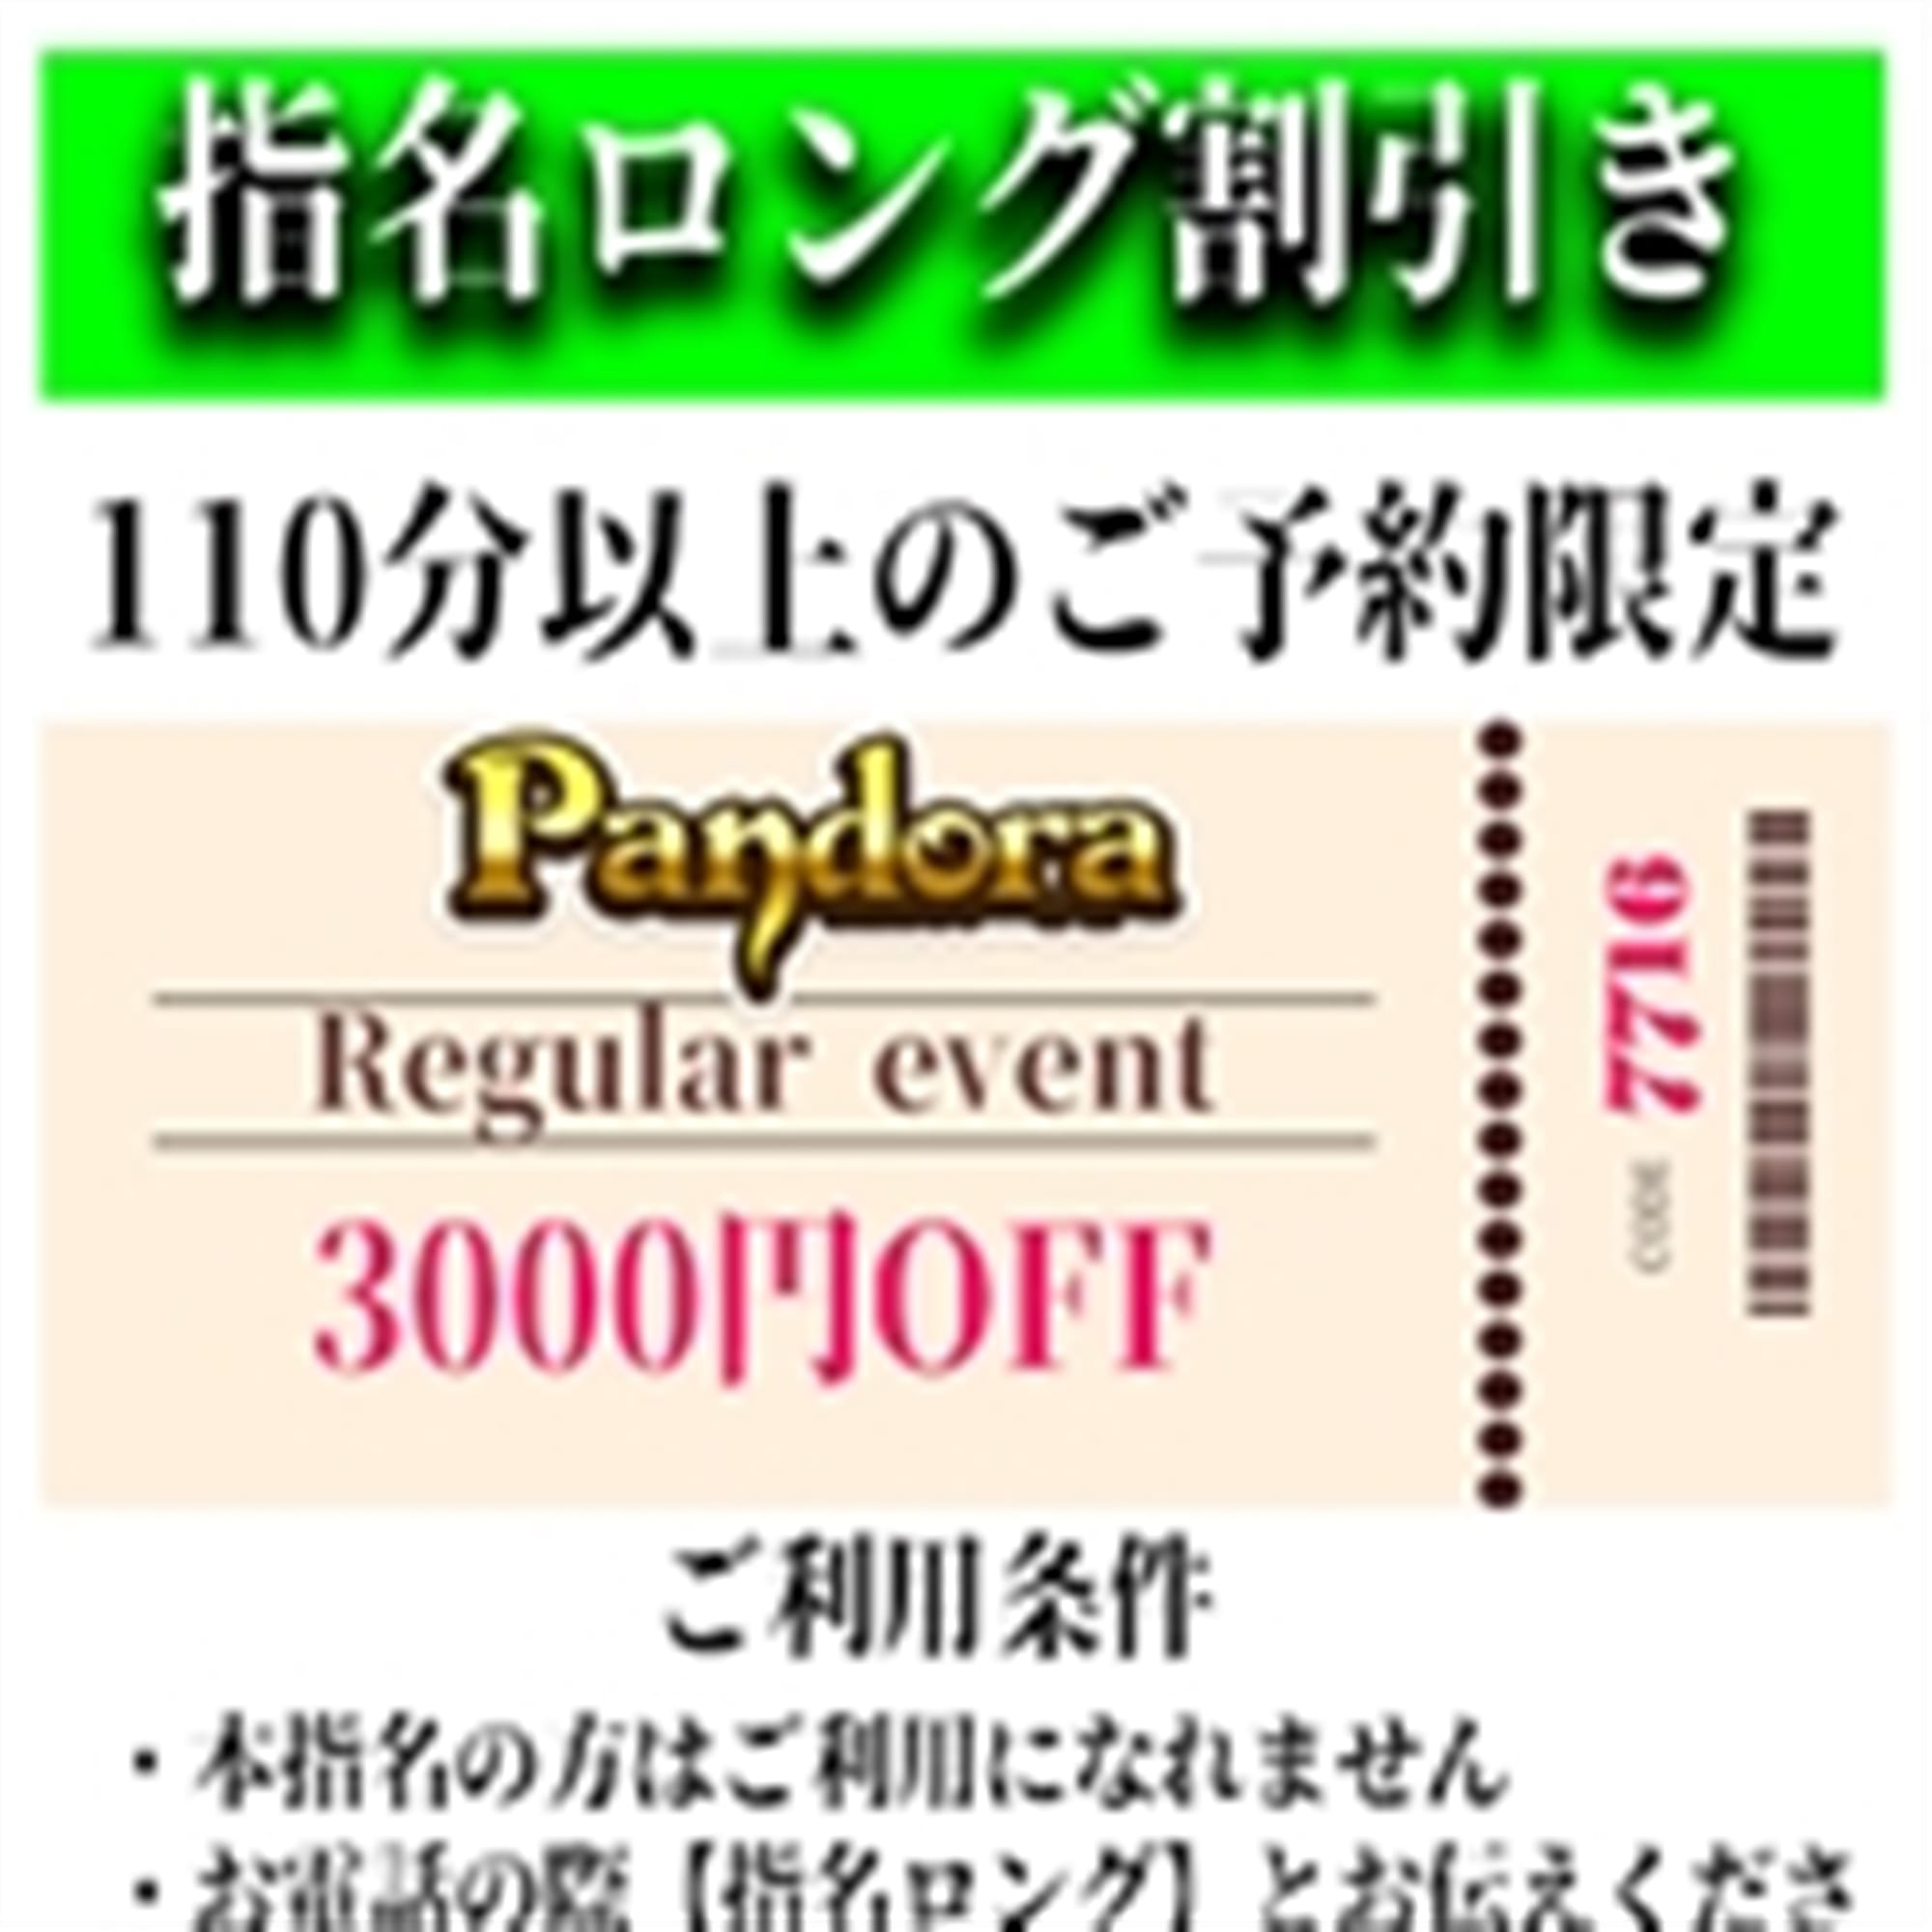 「ご指名のお客様も遊べるロングコース割引」04/20(土) 06:22 | Pandora(パンドラ)新潟のお得なニュース